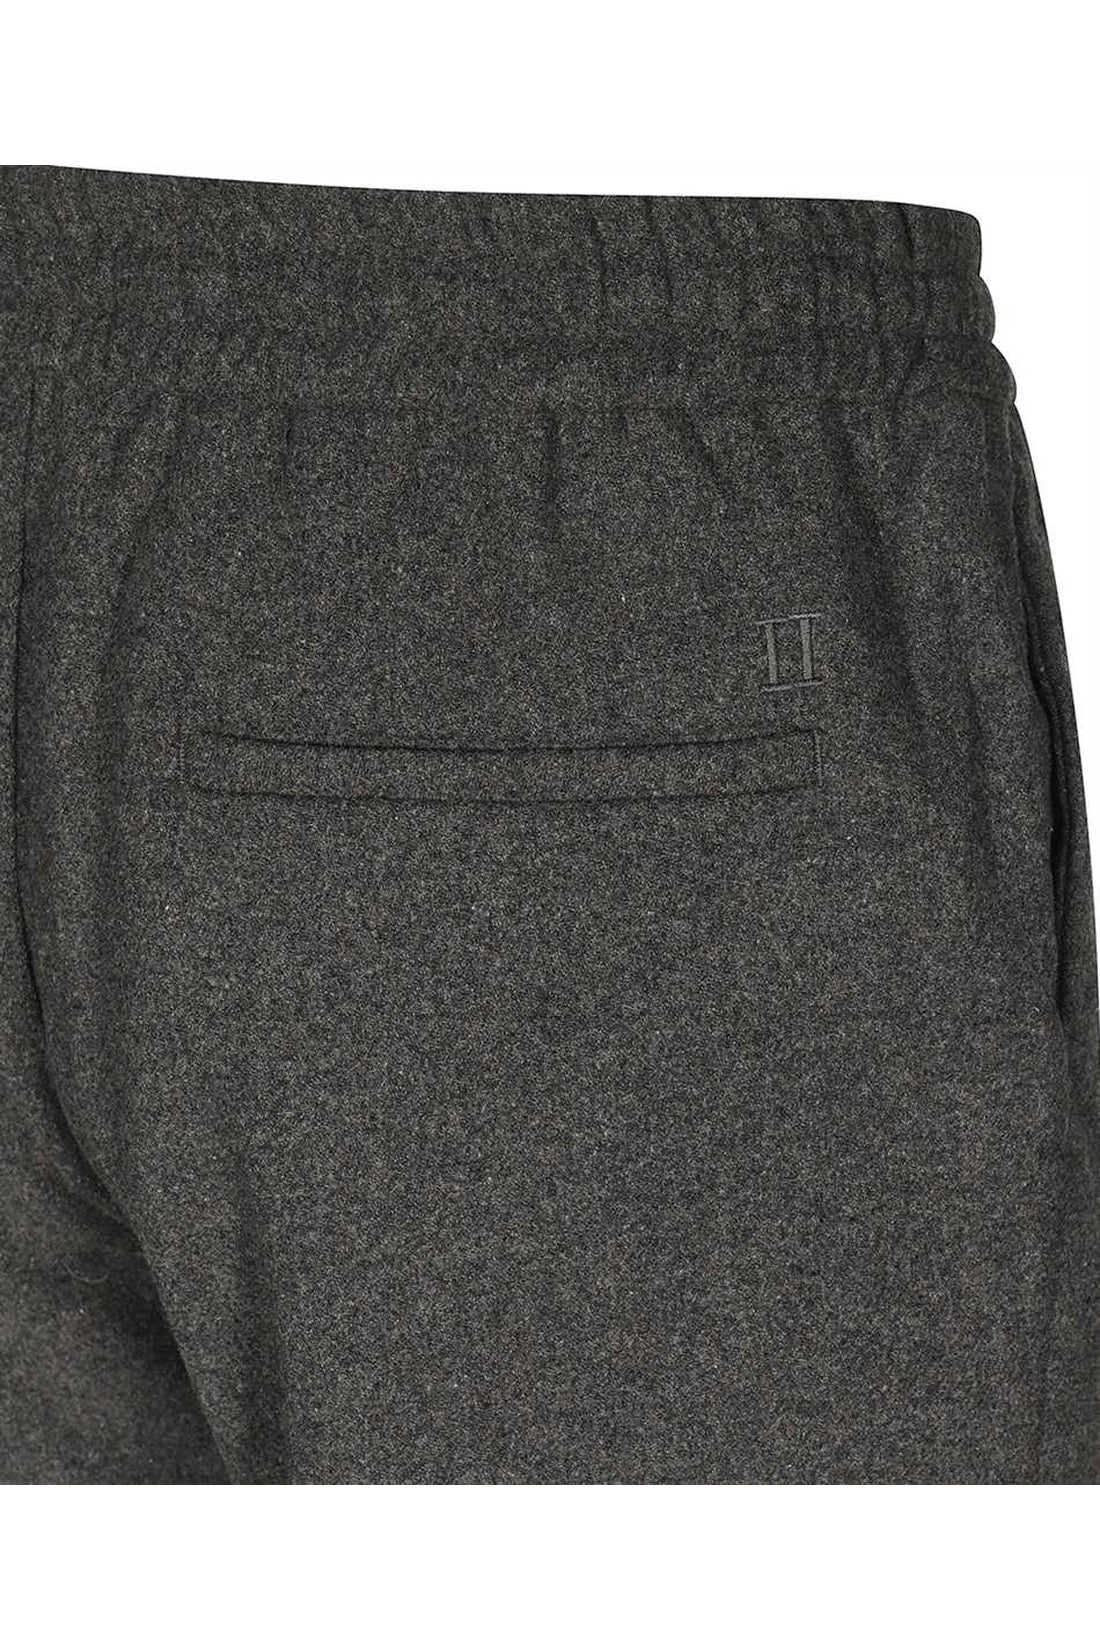 Les Deux-OUTLET-SALE-Wool blend trousers-ARCHIVIST